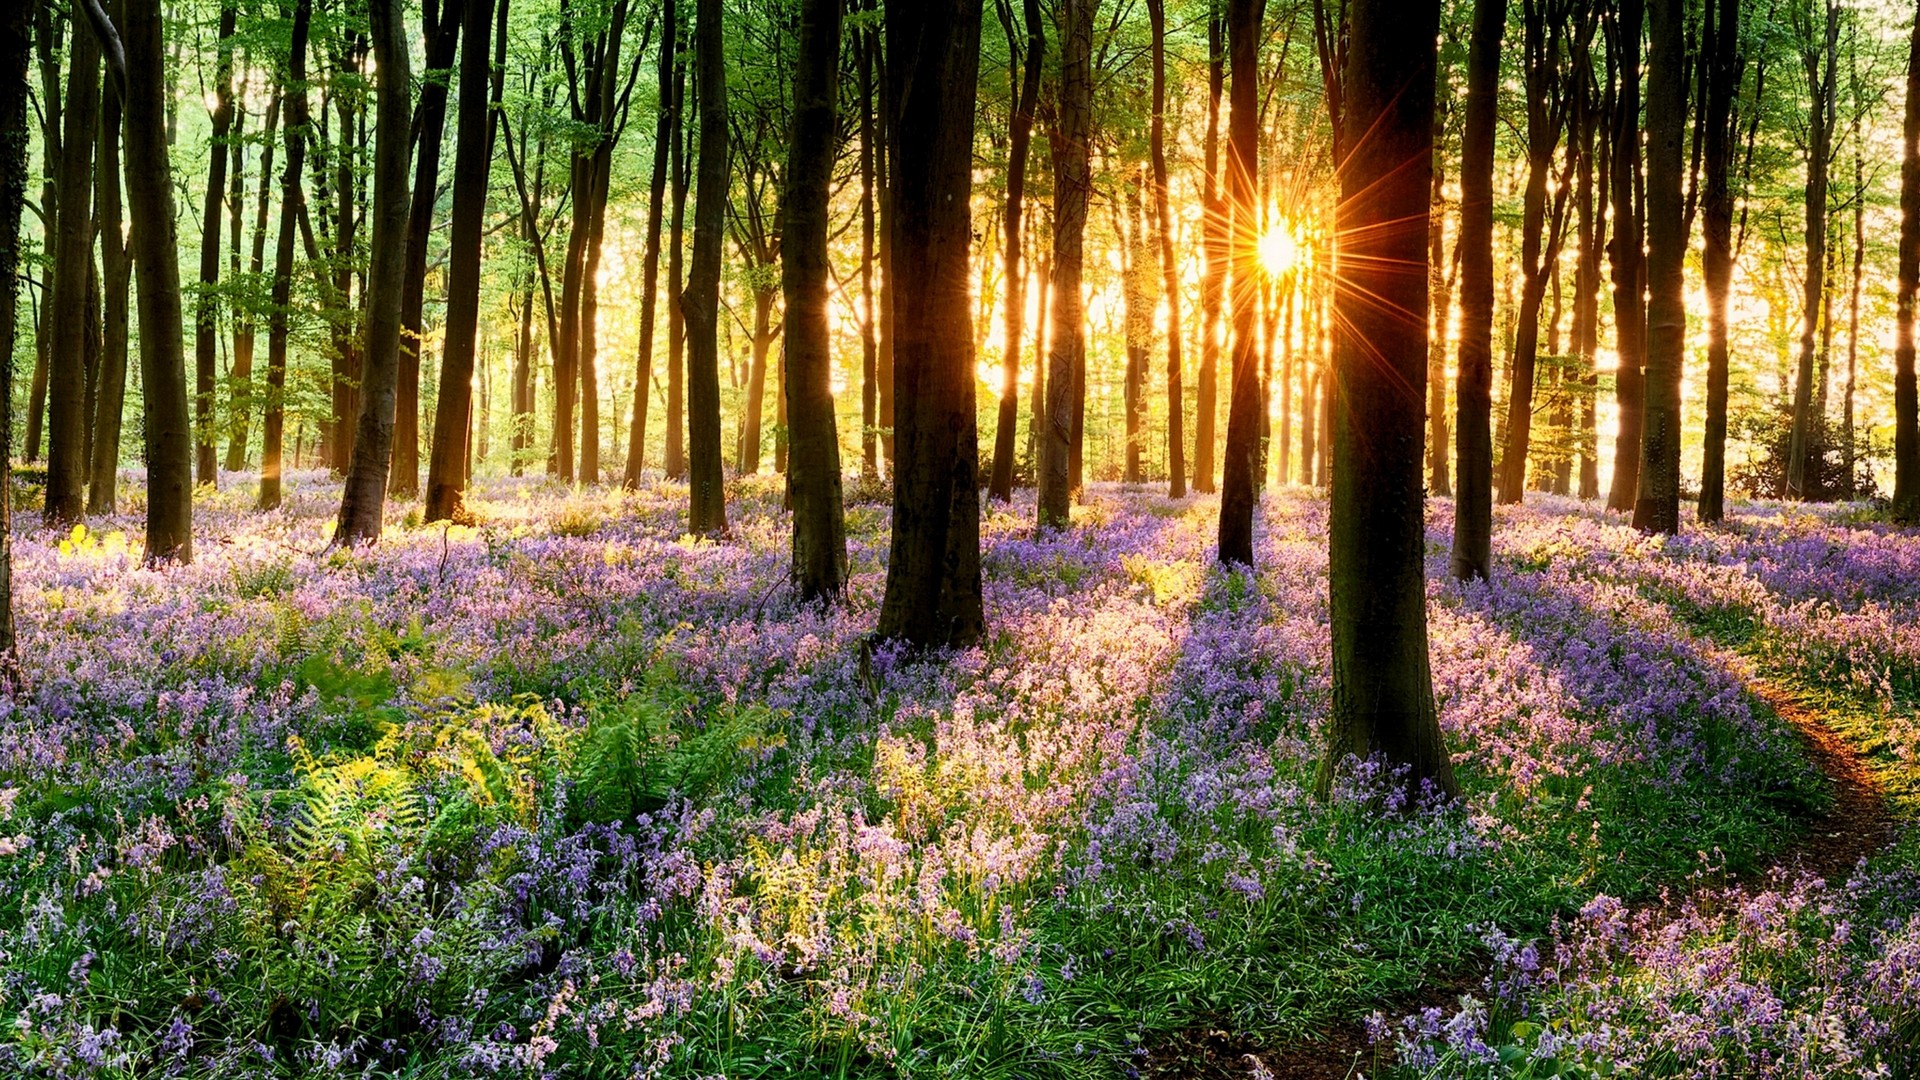 printemps nature fond d'écran en direct,paysage naturel,la nature,forêt,des bois,arbre